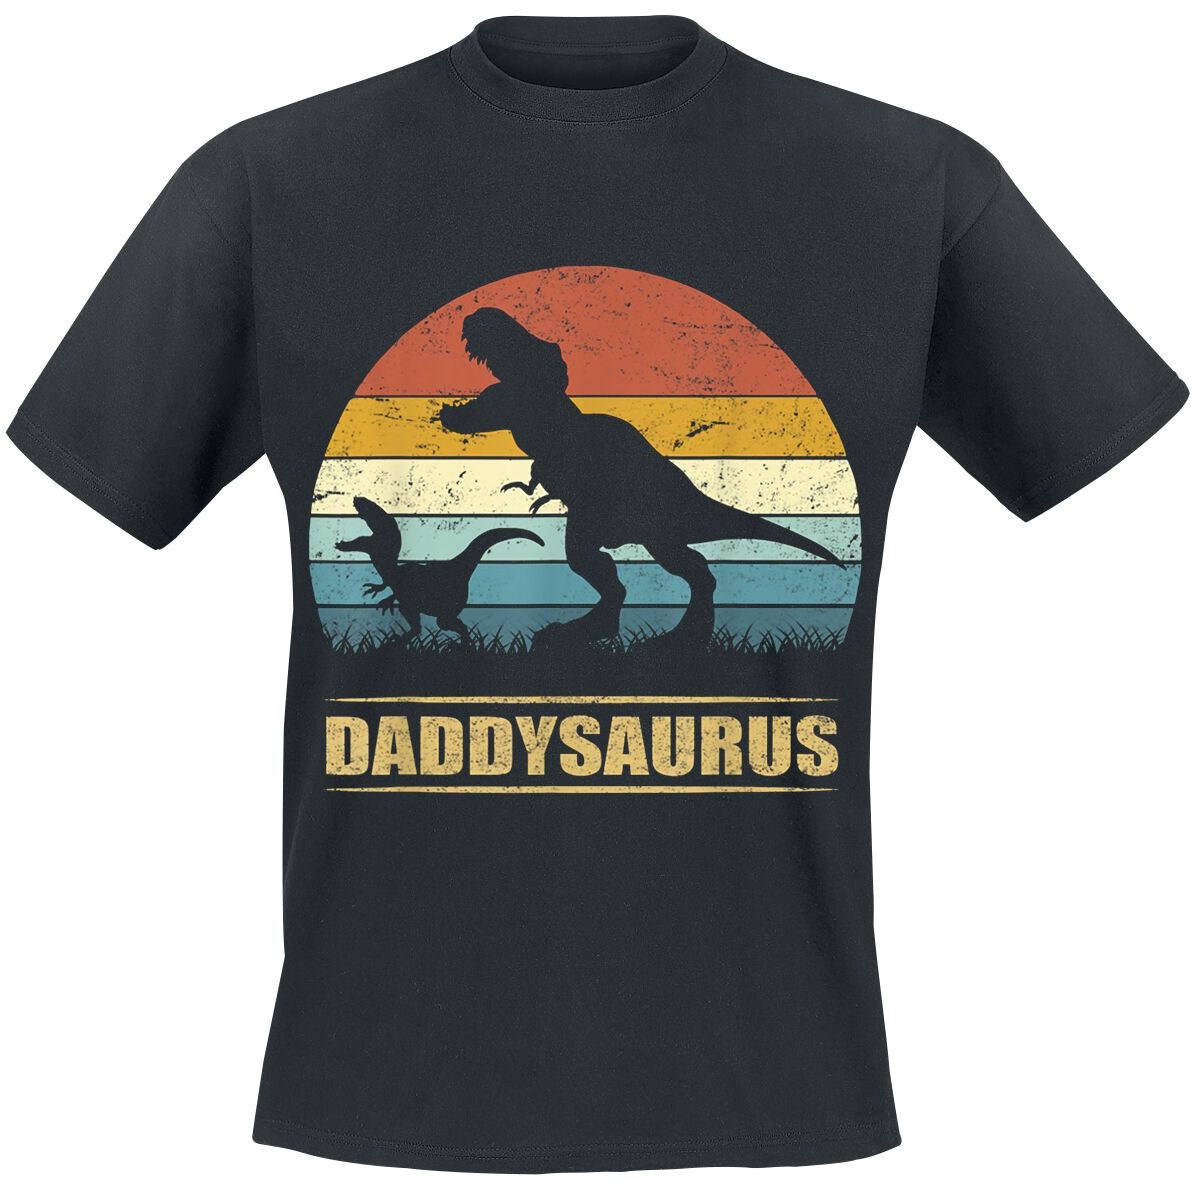 Familie & Freunde Daddysaurus 3 T-Shirt schwarz in S